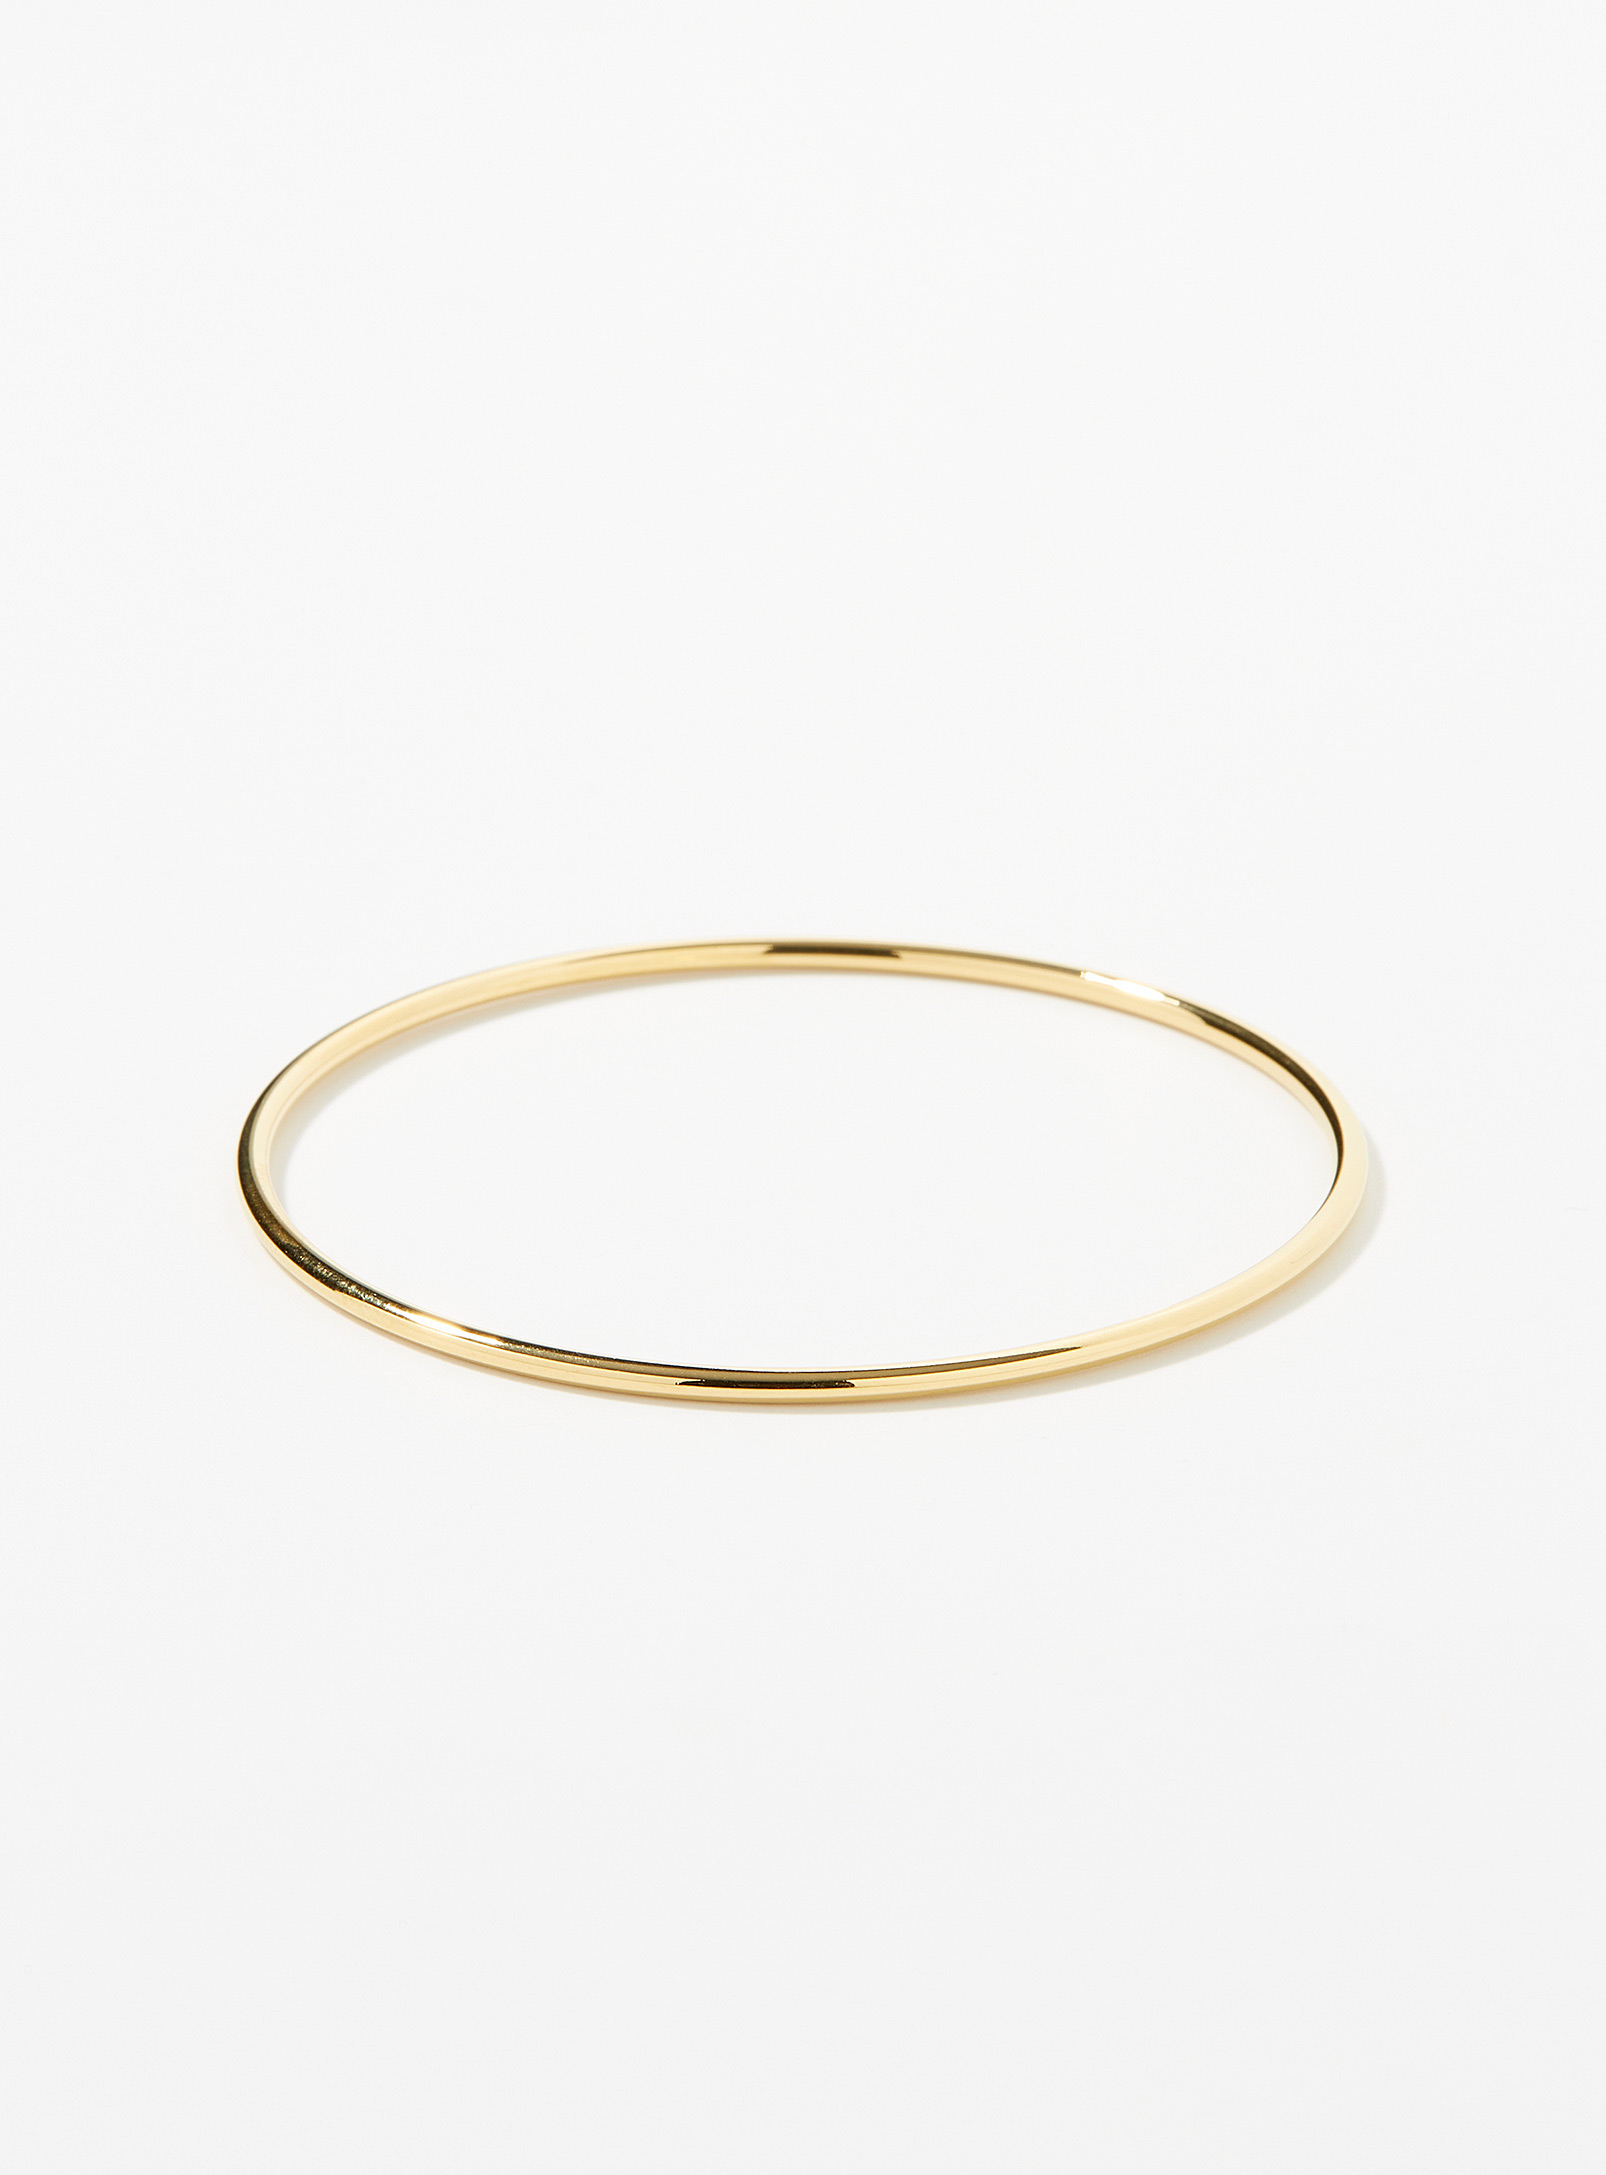 Simons - Women's Golden refined bracelet